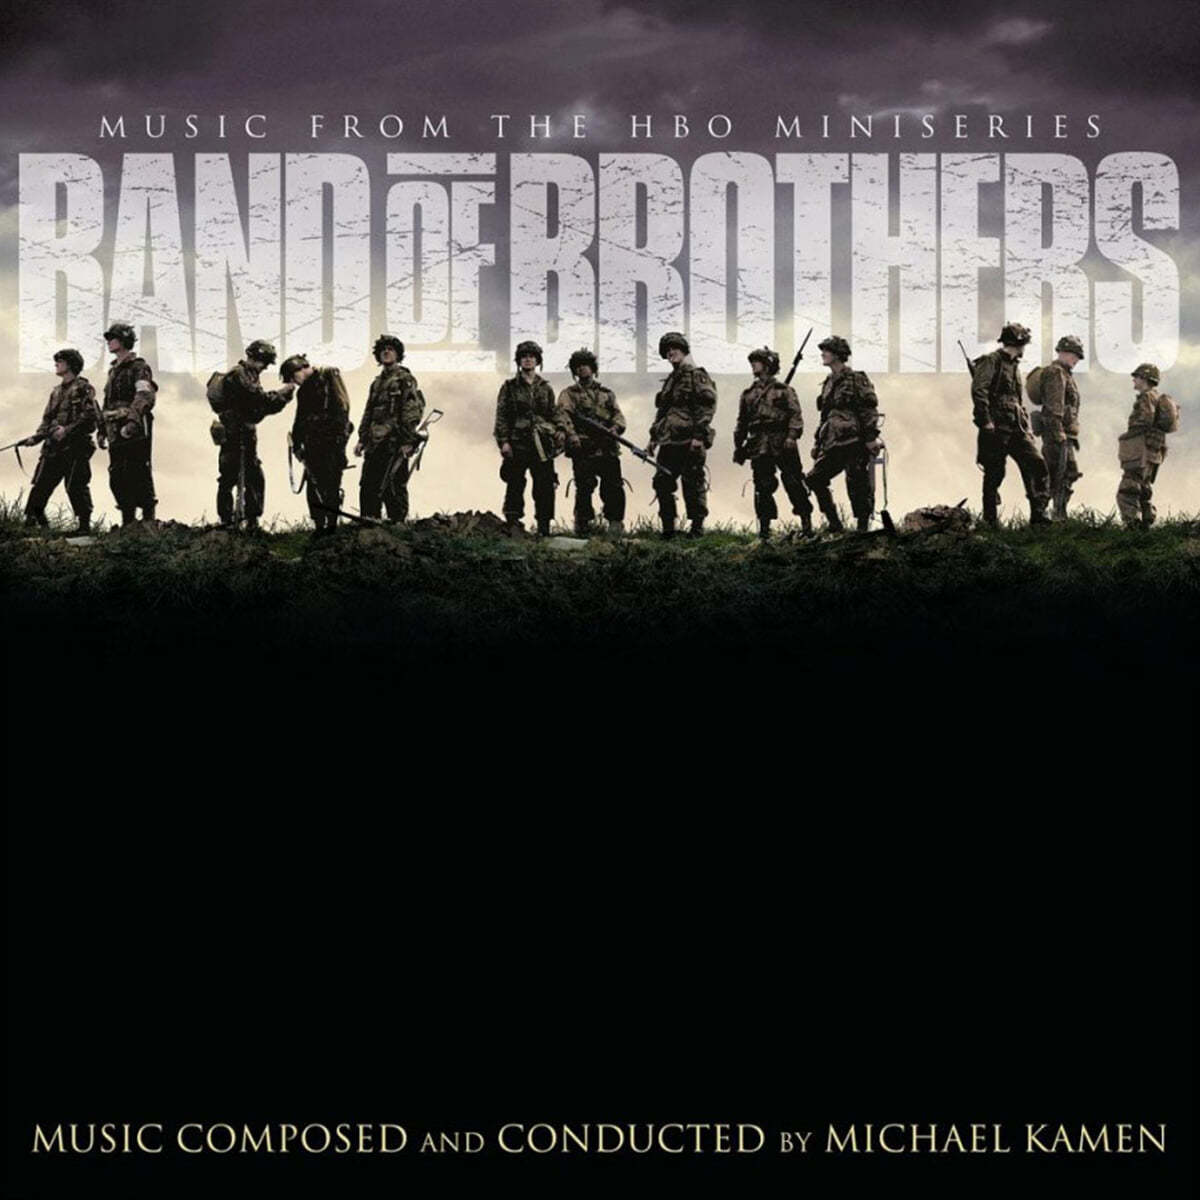 밴드 오브 브라더스 드라마음악 (Band Of Brothers OST by Michael Kamen) [블랙골드 마블 컬러 2LP] 